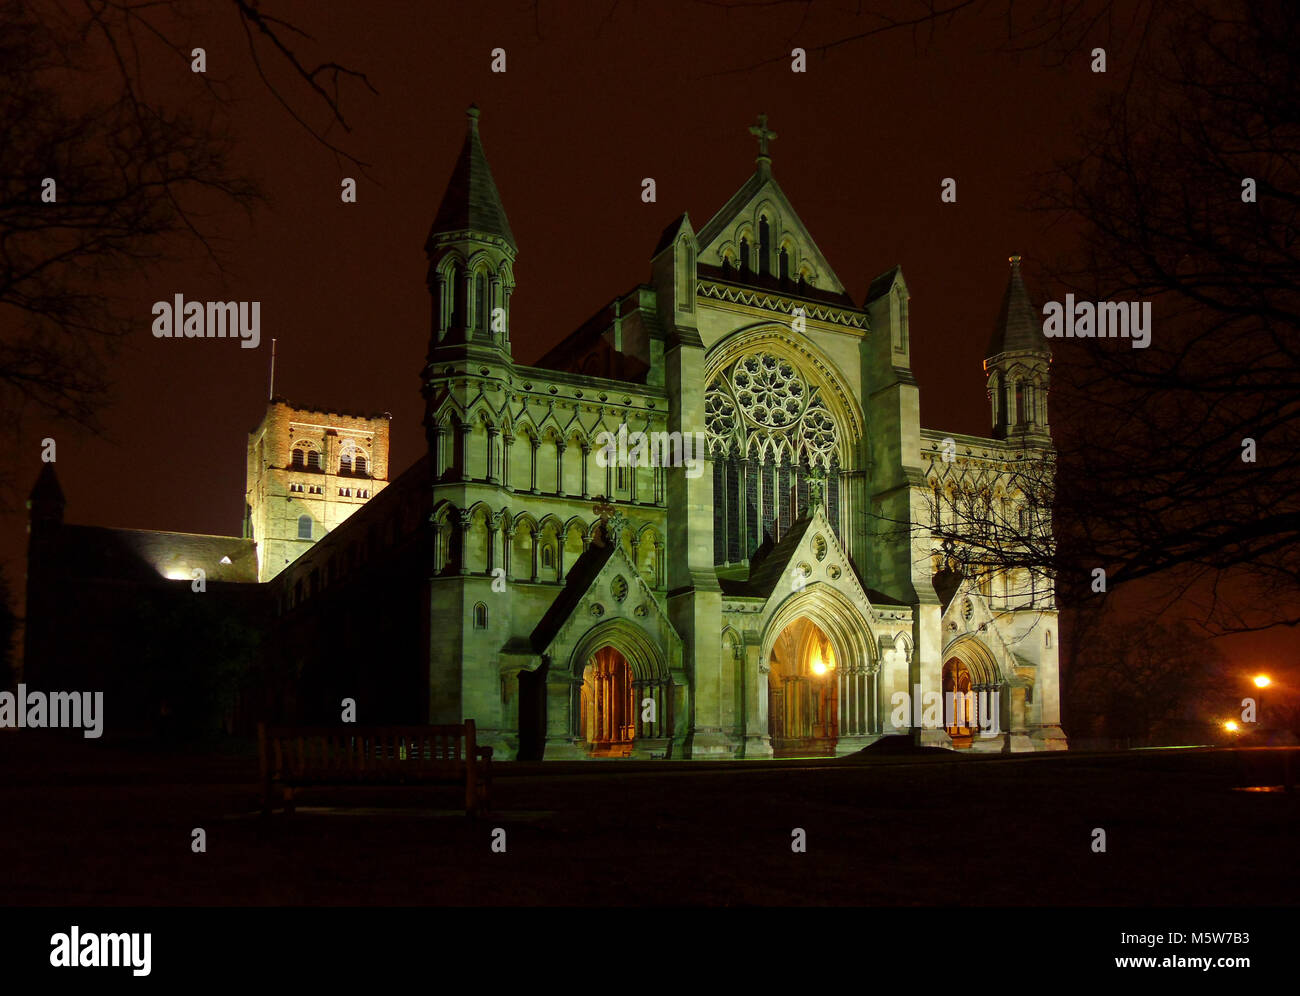 Vue de nuit illuminés : St Albans Cathedral et église abbatiale, Hertfordshire, Angleterre Banque D'Images